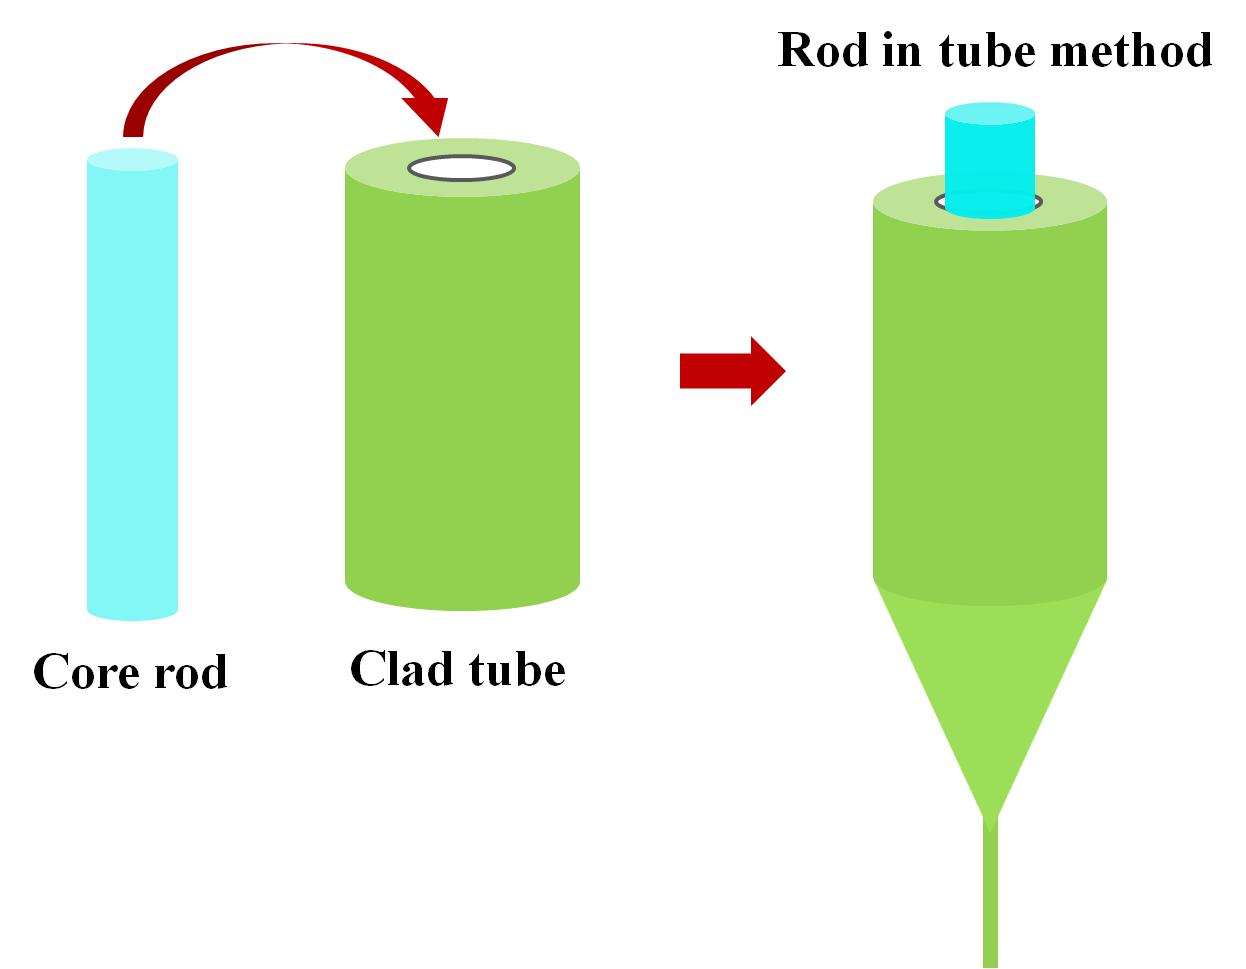 비선형 광섬유 제조를 위한 rod in tube 공정